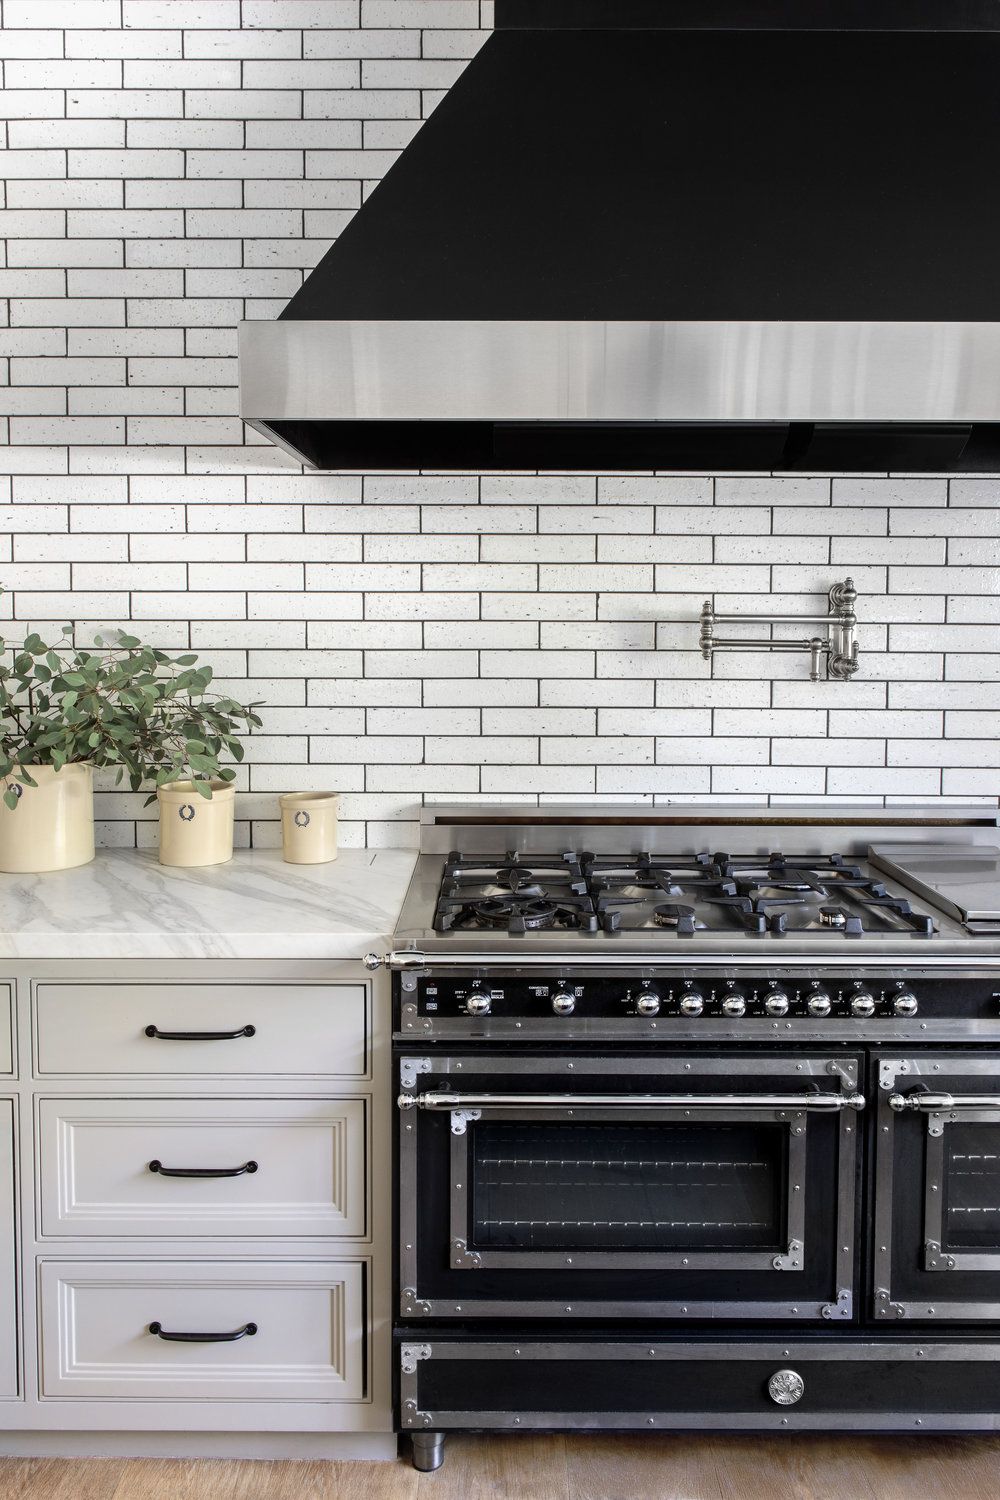 65 Best Kitchen Backsplash Ideas Tile, Tile Backsplash Behind Stove